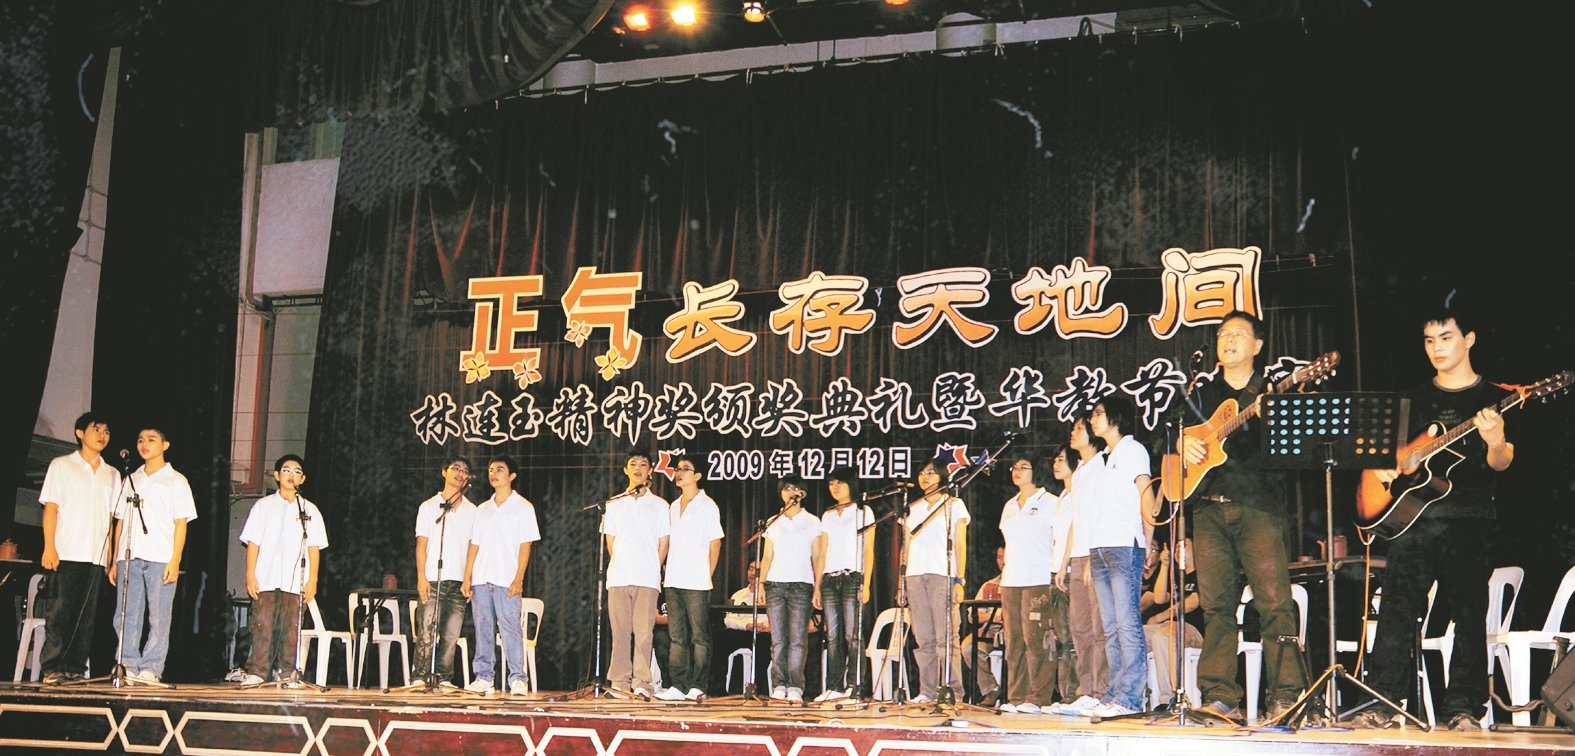 周金亮（右2）于2009年12月12日《正气长存天地间》林连玉精神奖颁奖典礼暨华教节晚宴上，与音乐学生团队合唱《一颗种籽》。